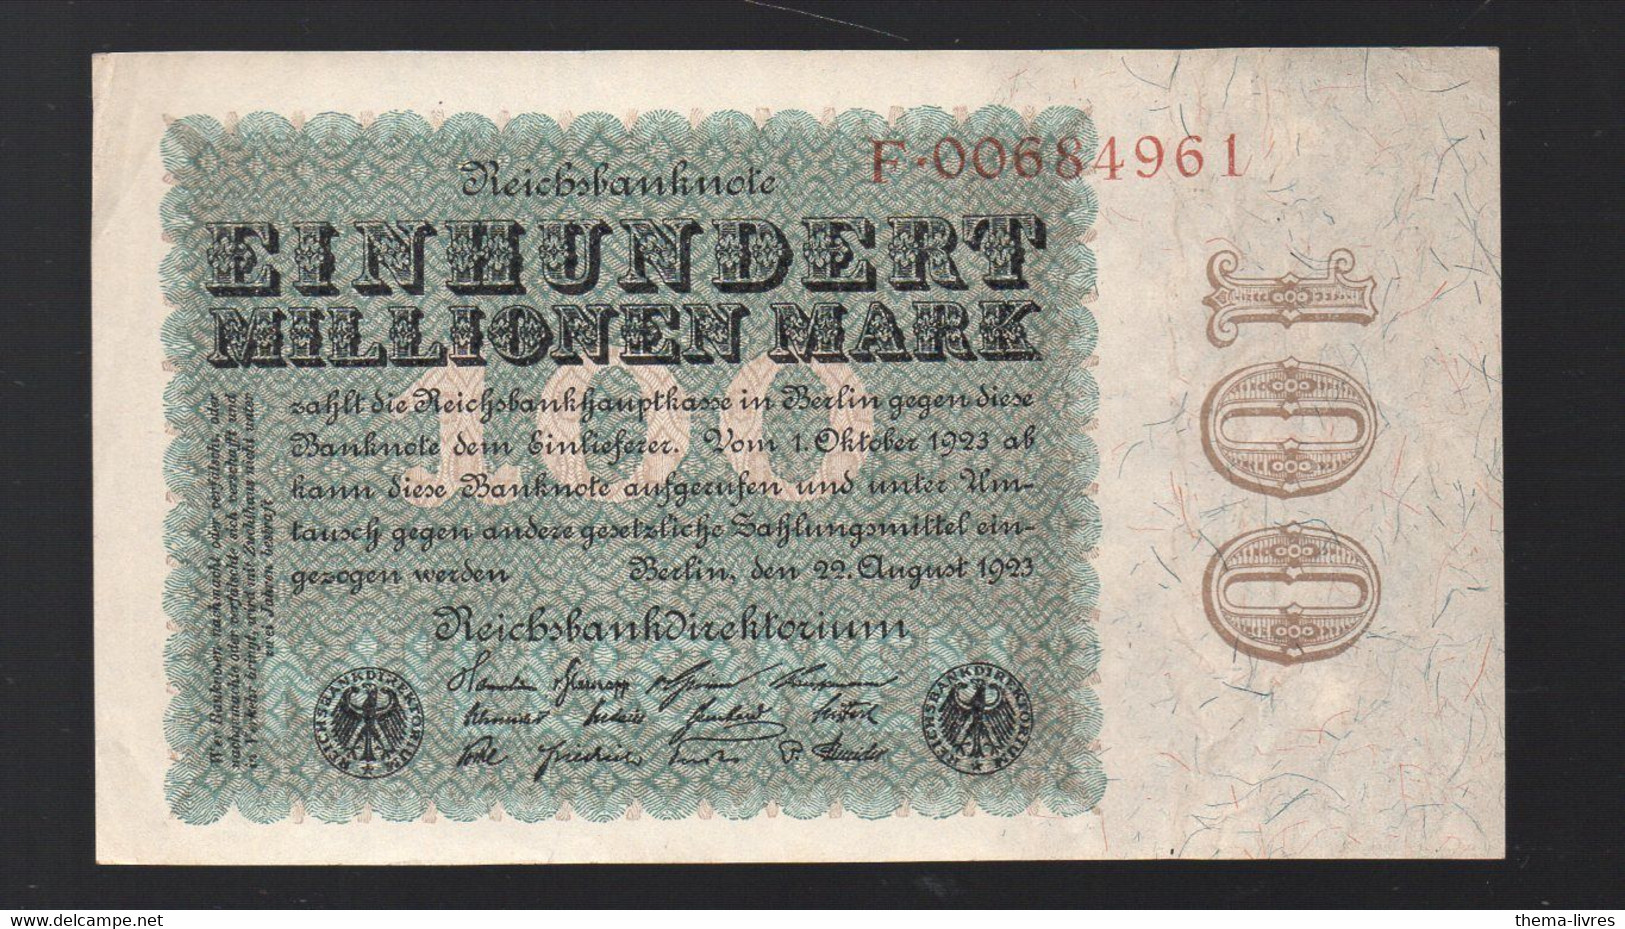 (Allemagne ) Billet De  100 Millionen Marks  1923  (PPP33308) - 100 Mio. Mark